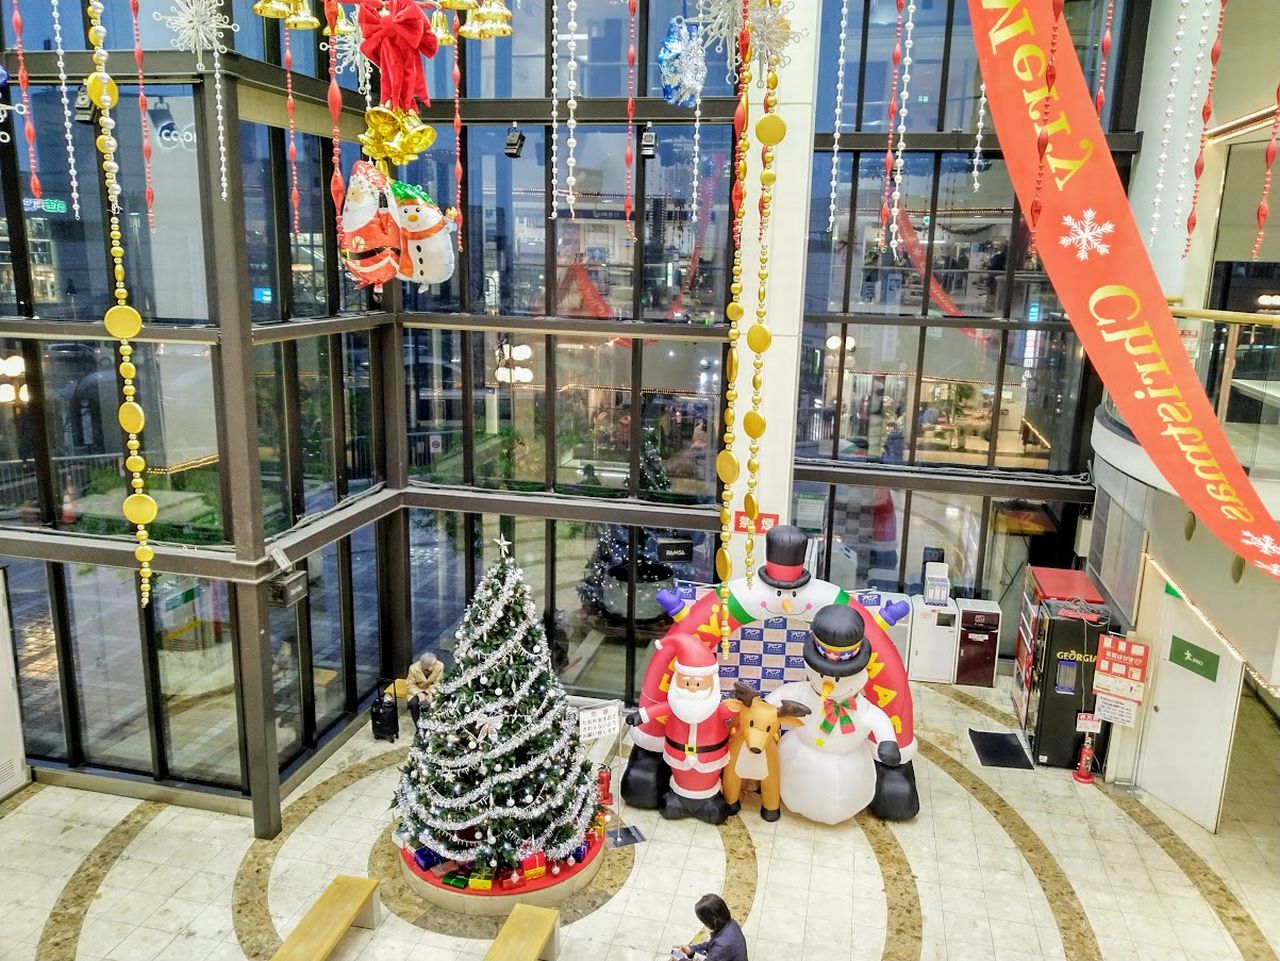 アピア1ふれあい広場のクリスマス装飾2019